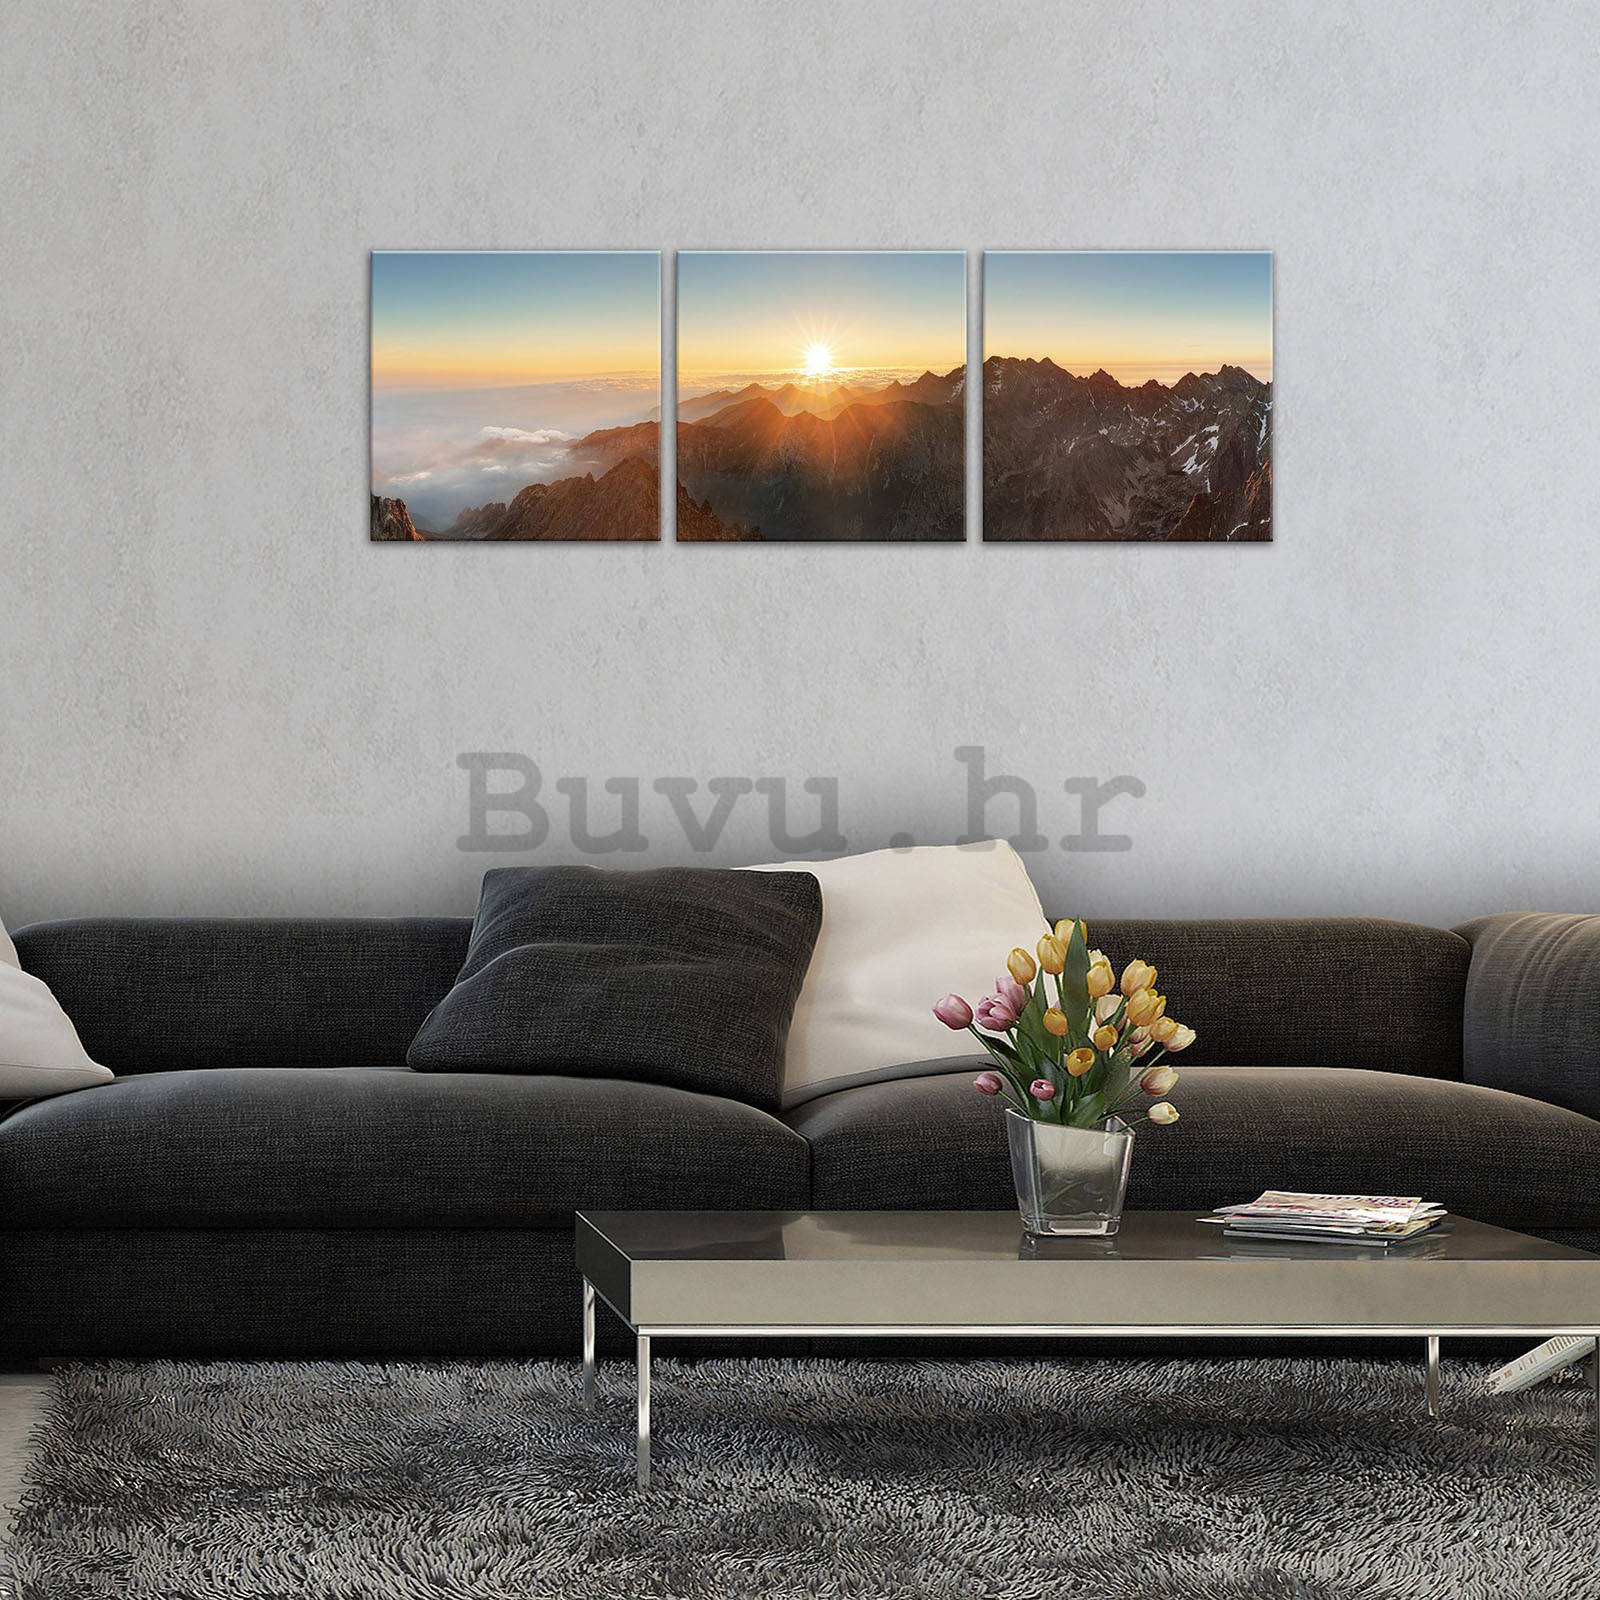 Slika na platnu: Zalazak sunca u planinama - set 3kom 25x25cm